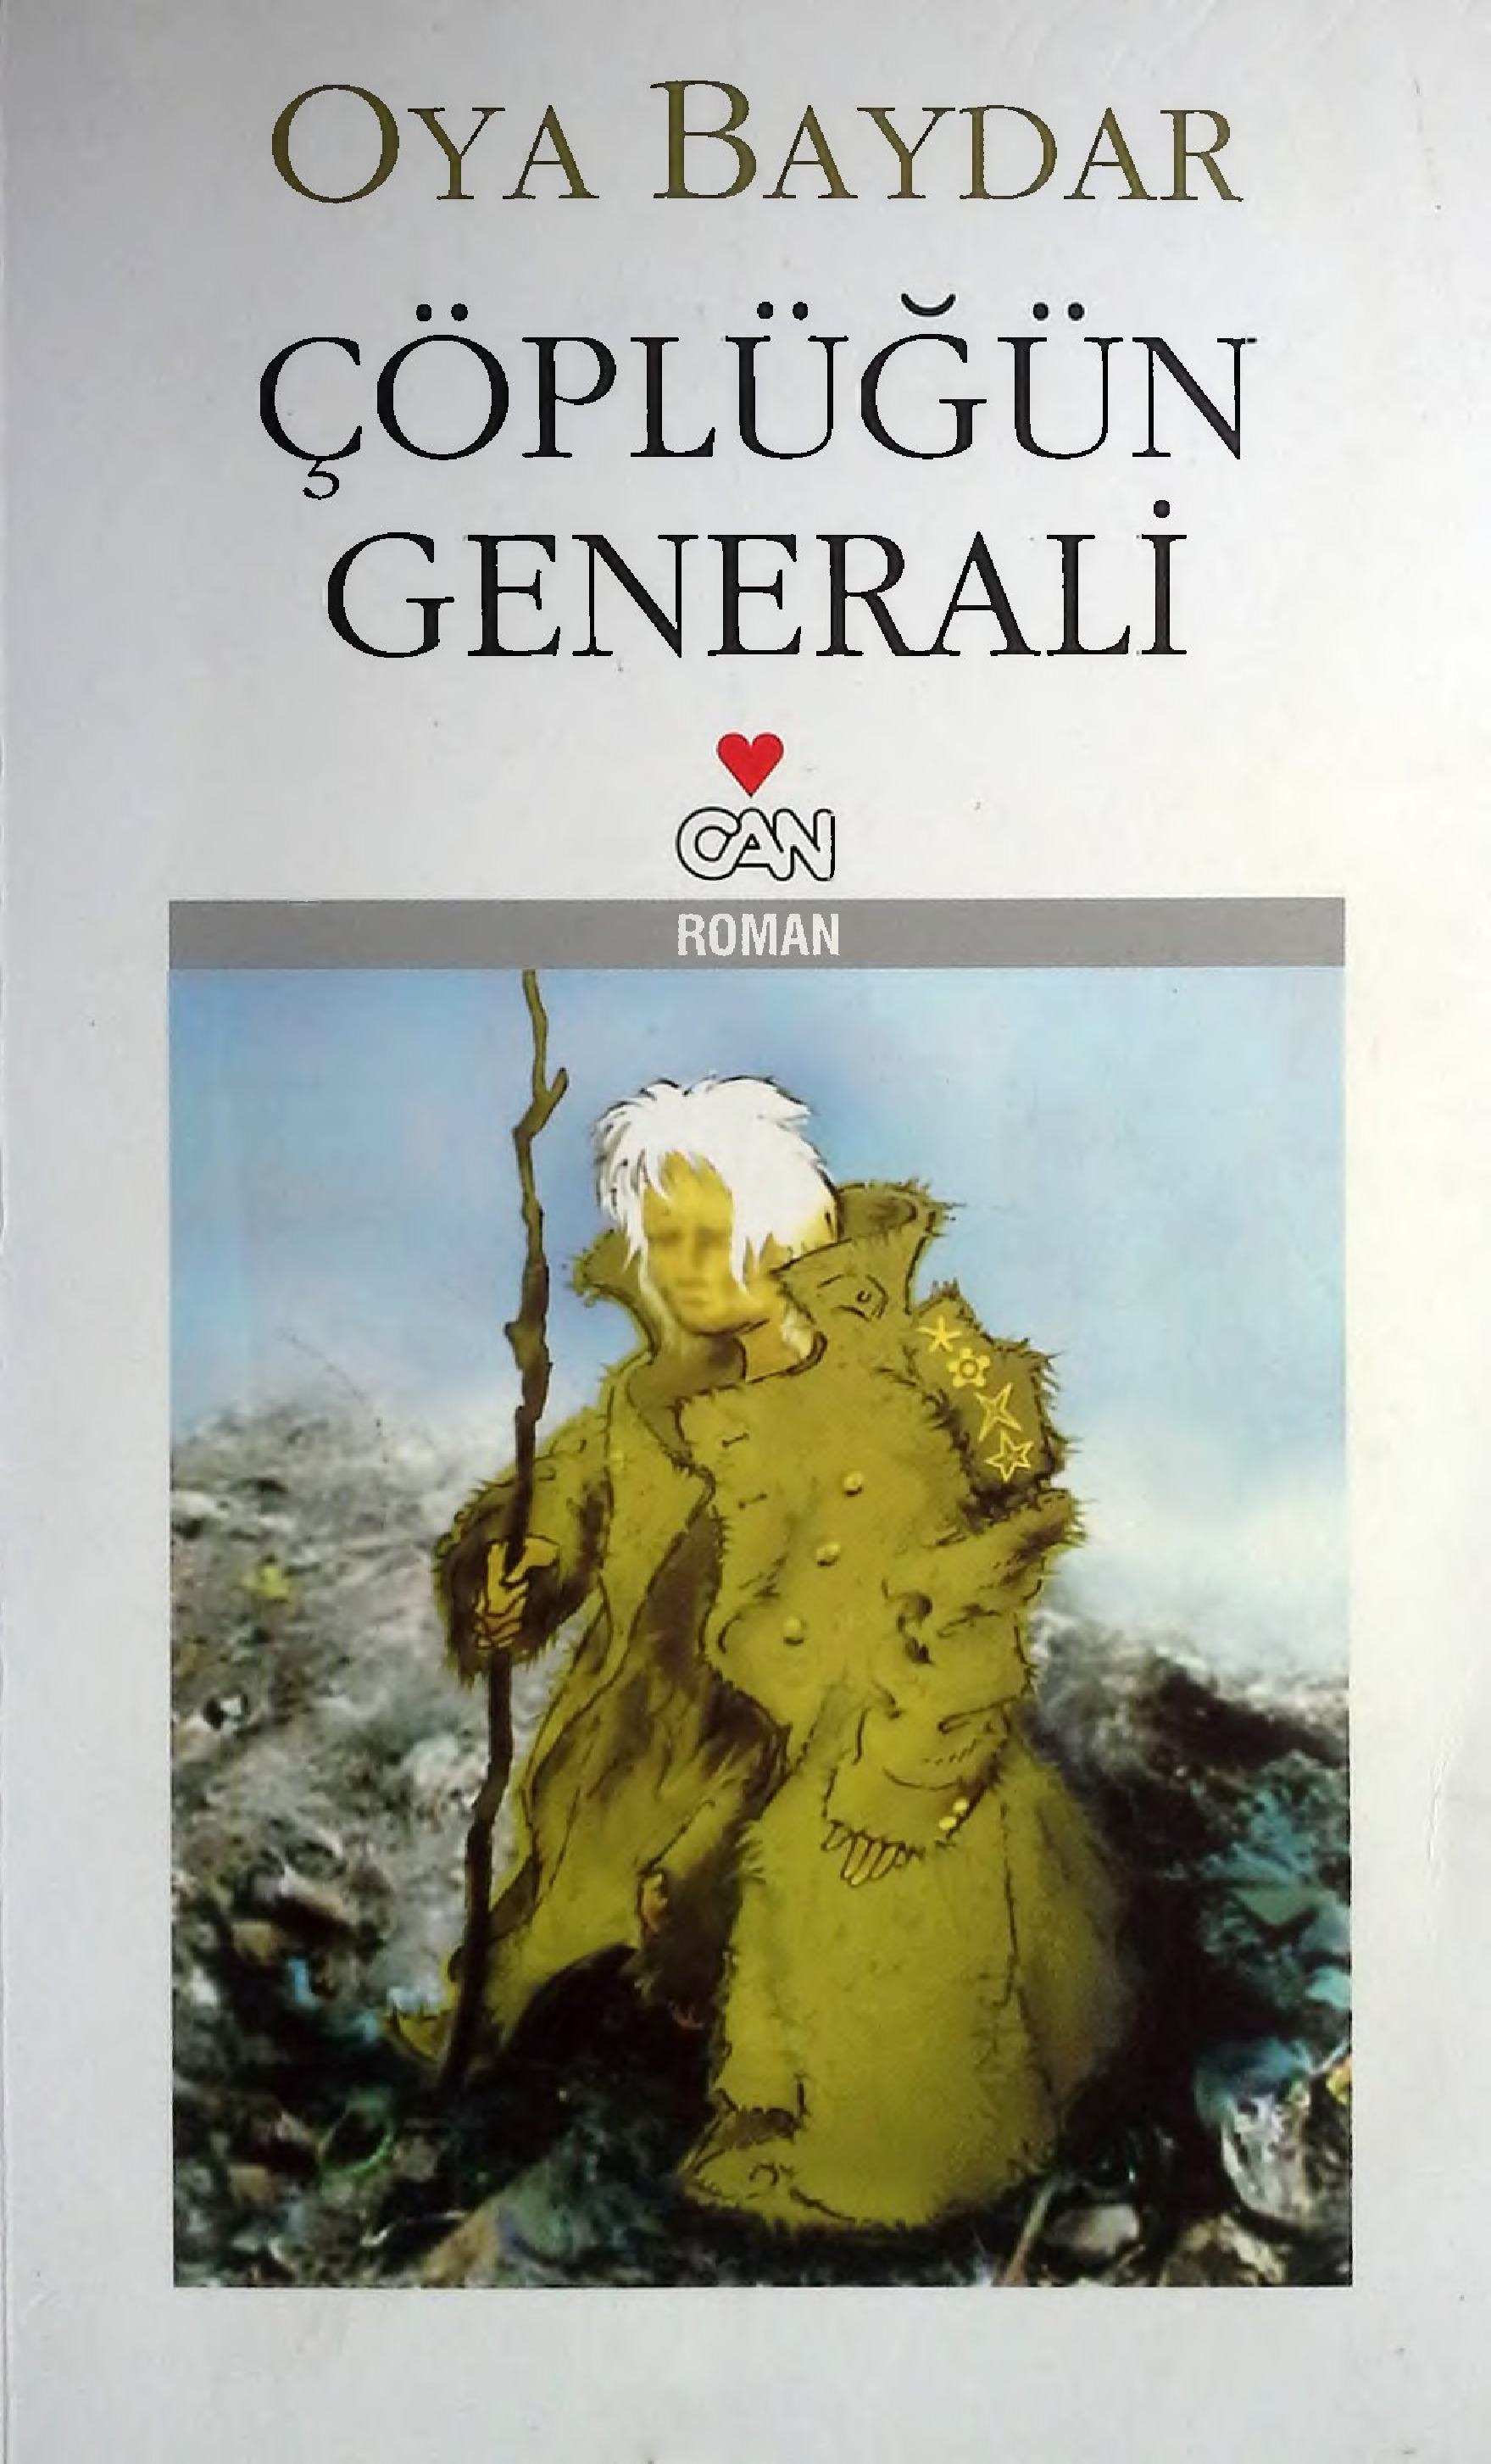 Çöplüğün Generalı -Oya Baydar-2009-257s